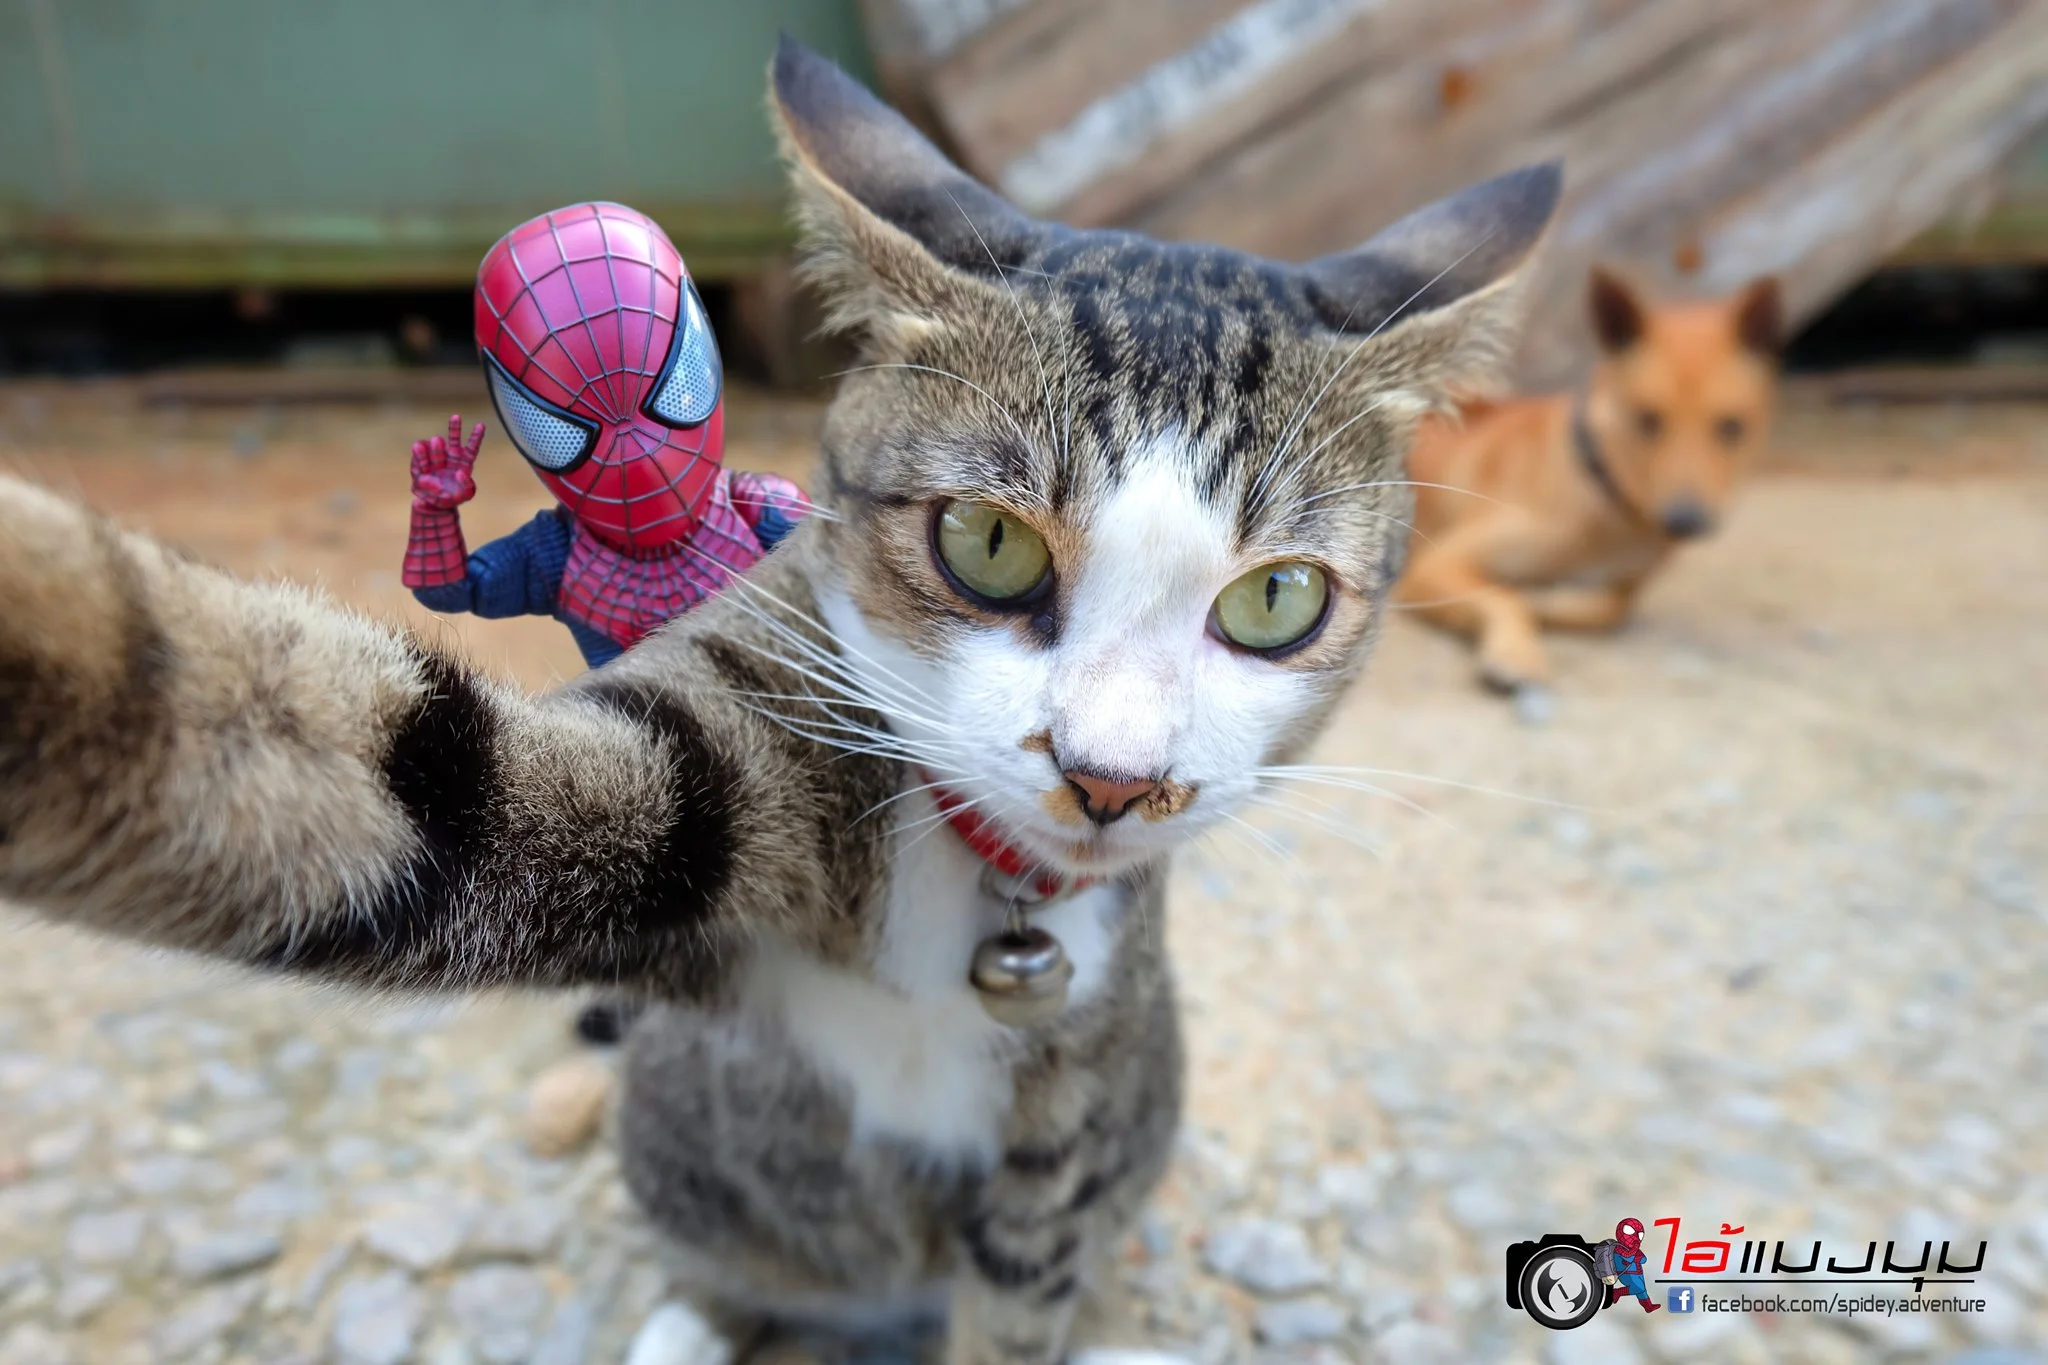 Художник додав до фото з котиками зображення Людини-павука – це виглядає дуже смішно - фото 459364